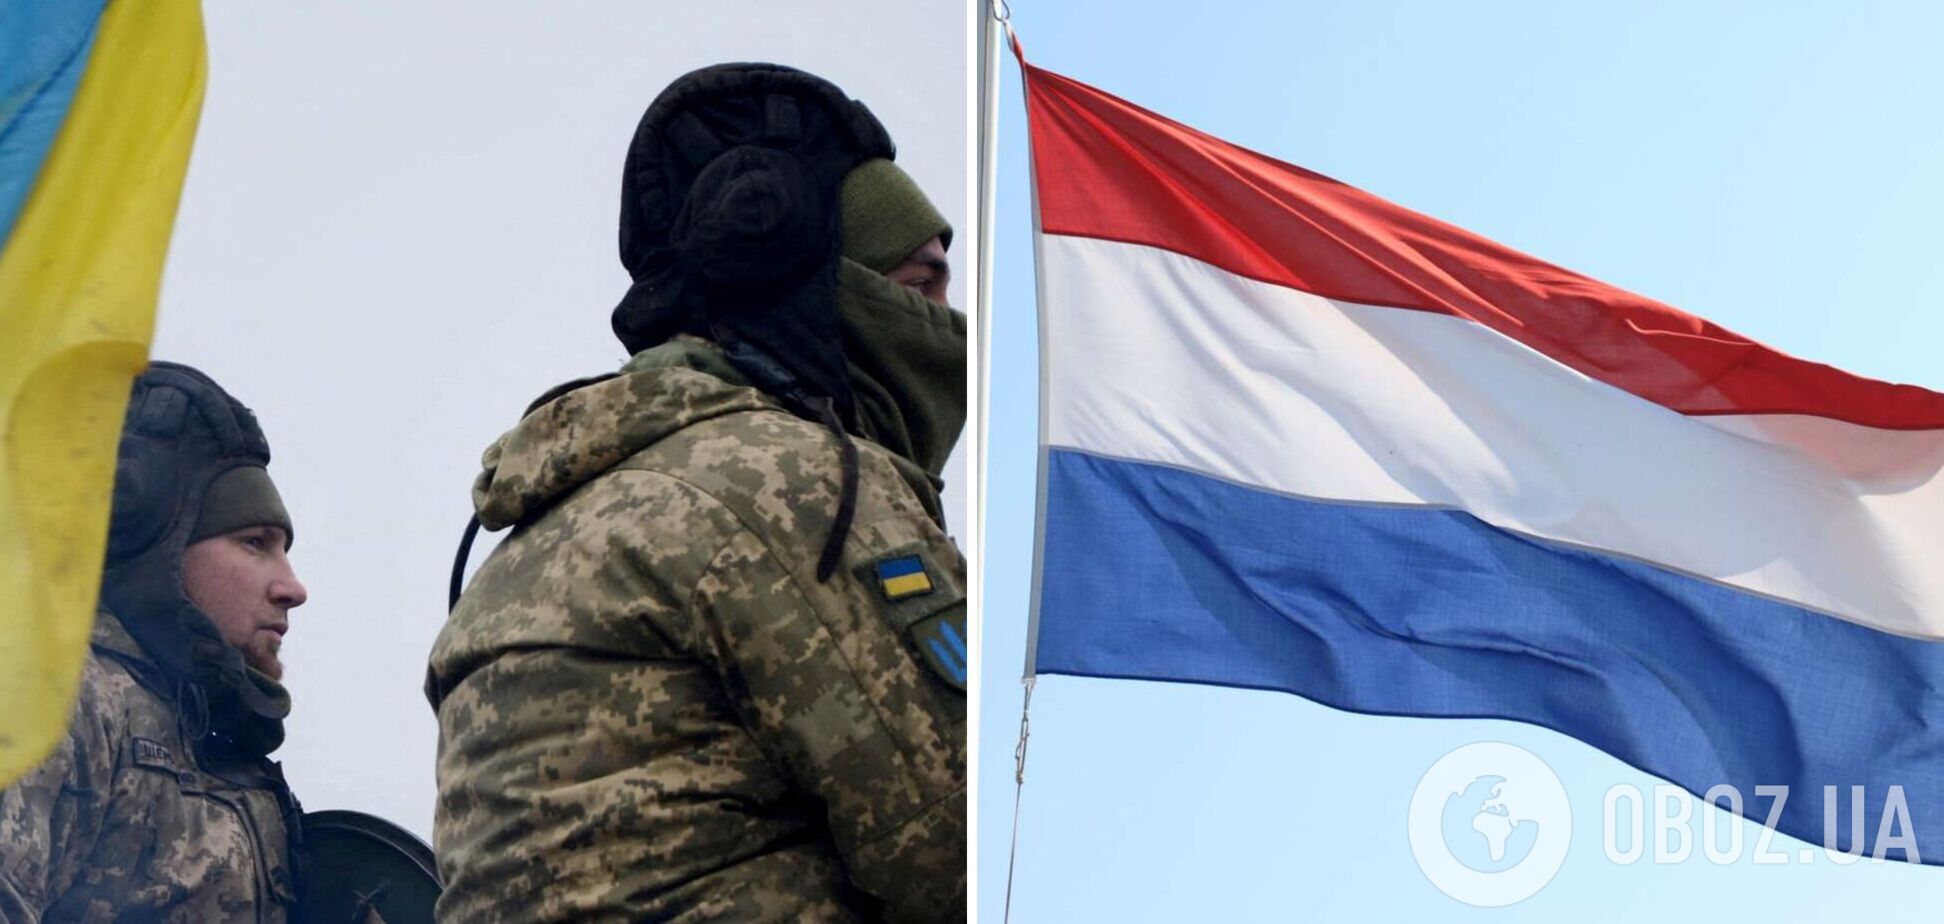 Нидерланды выделят Украине еще €500 млн: на что потратят деньги